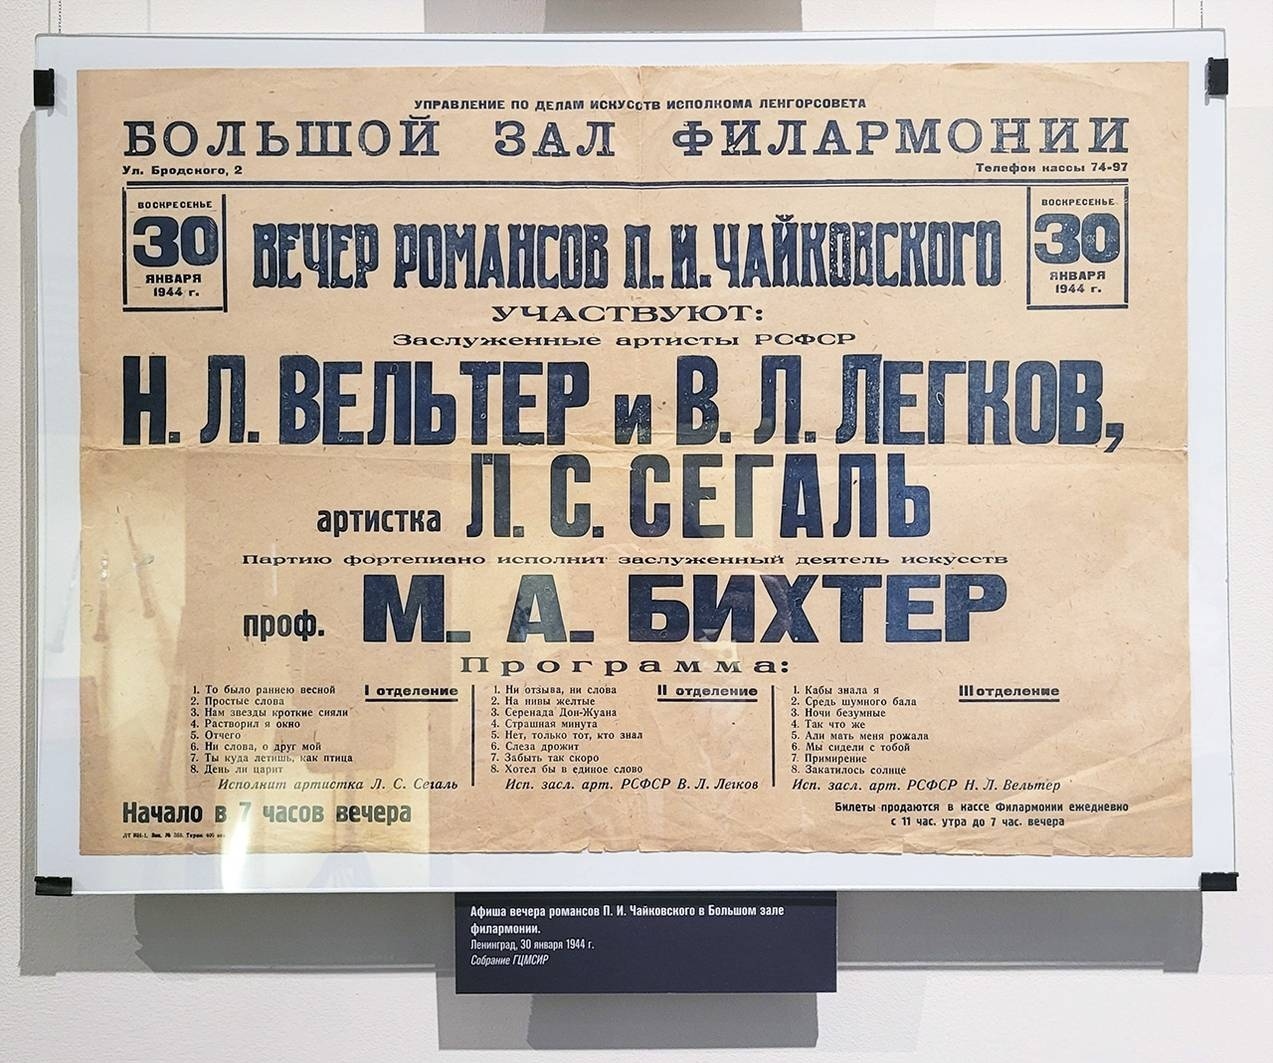 Афиша вечера романсов Петра Ильича Чайковского в Большом зале Филармонии. Ленинград, 30 января 1944 г.